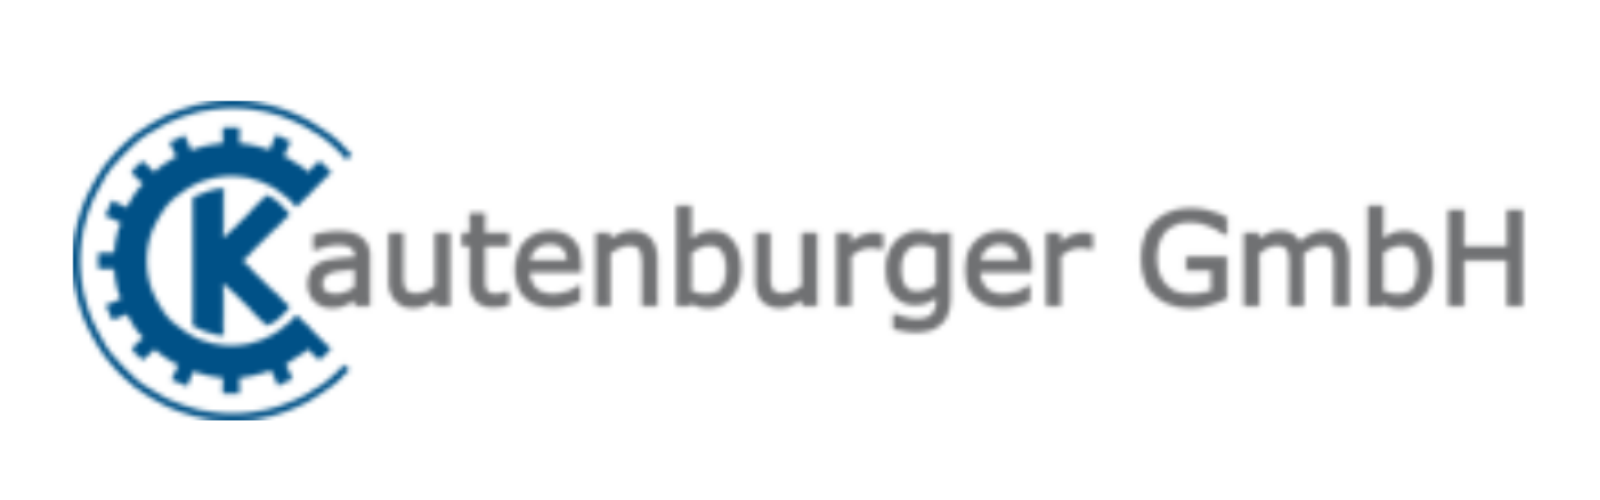 Kautenburger